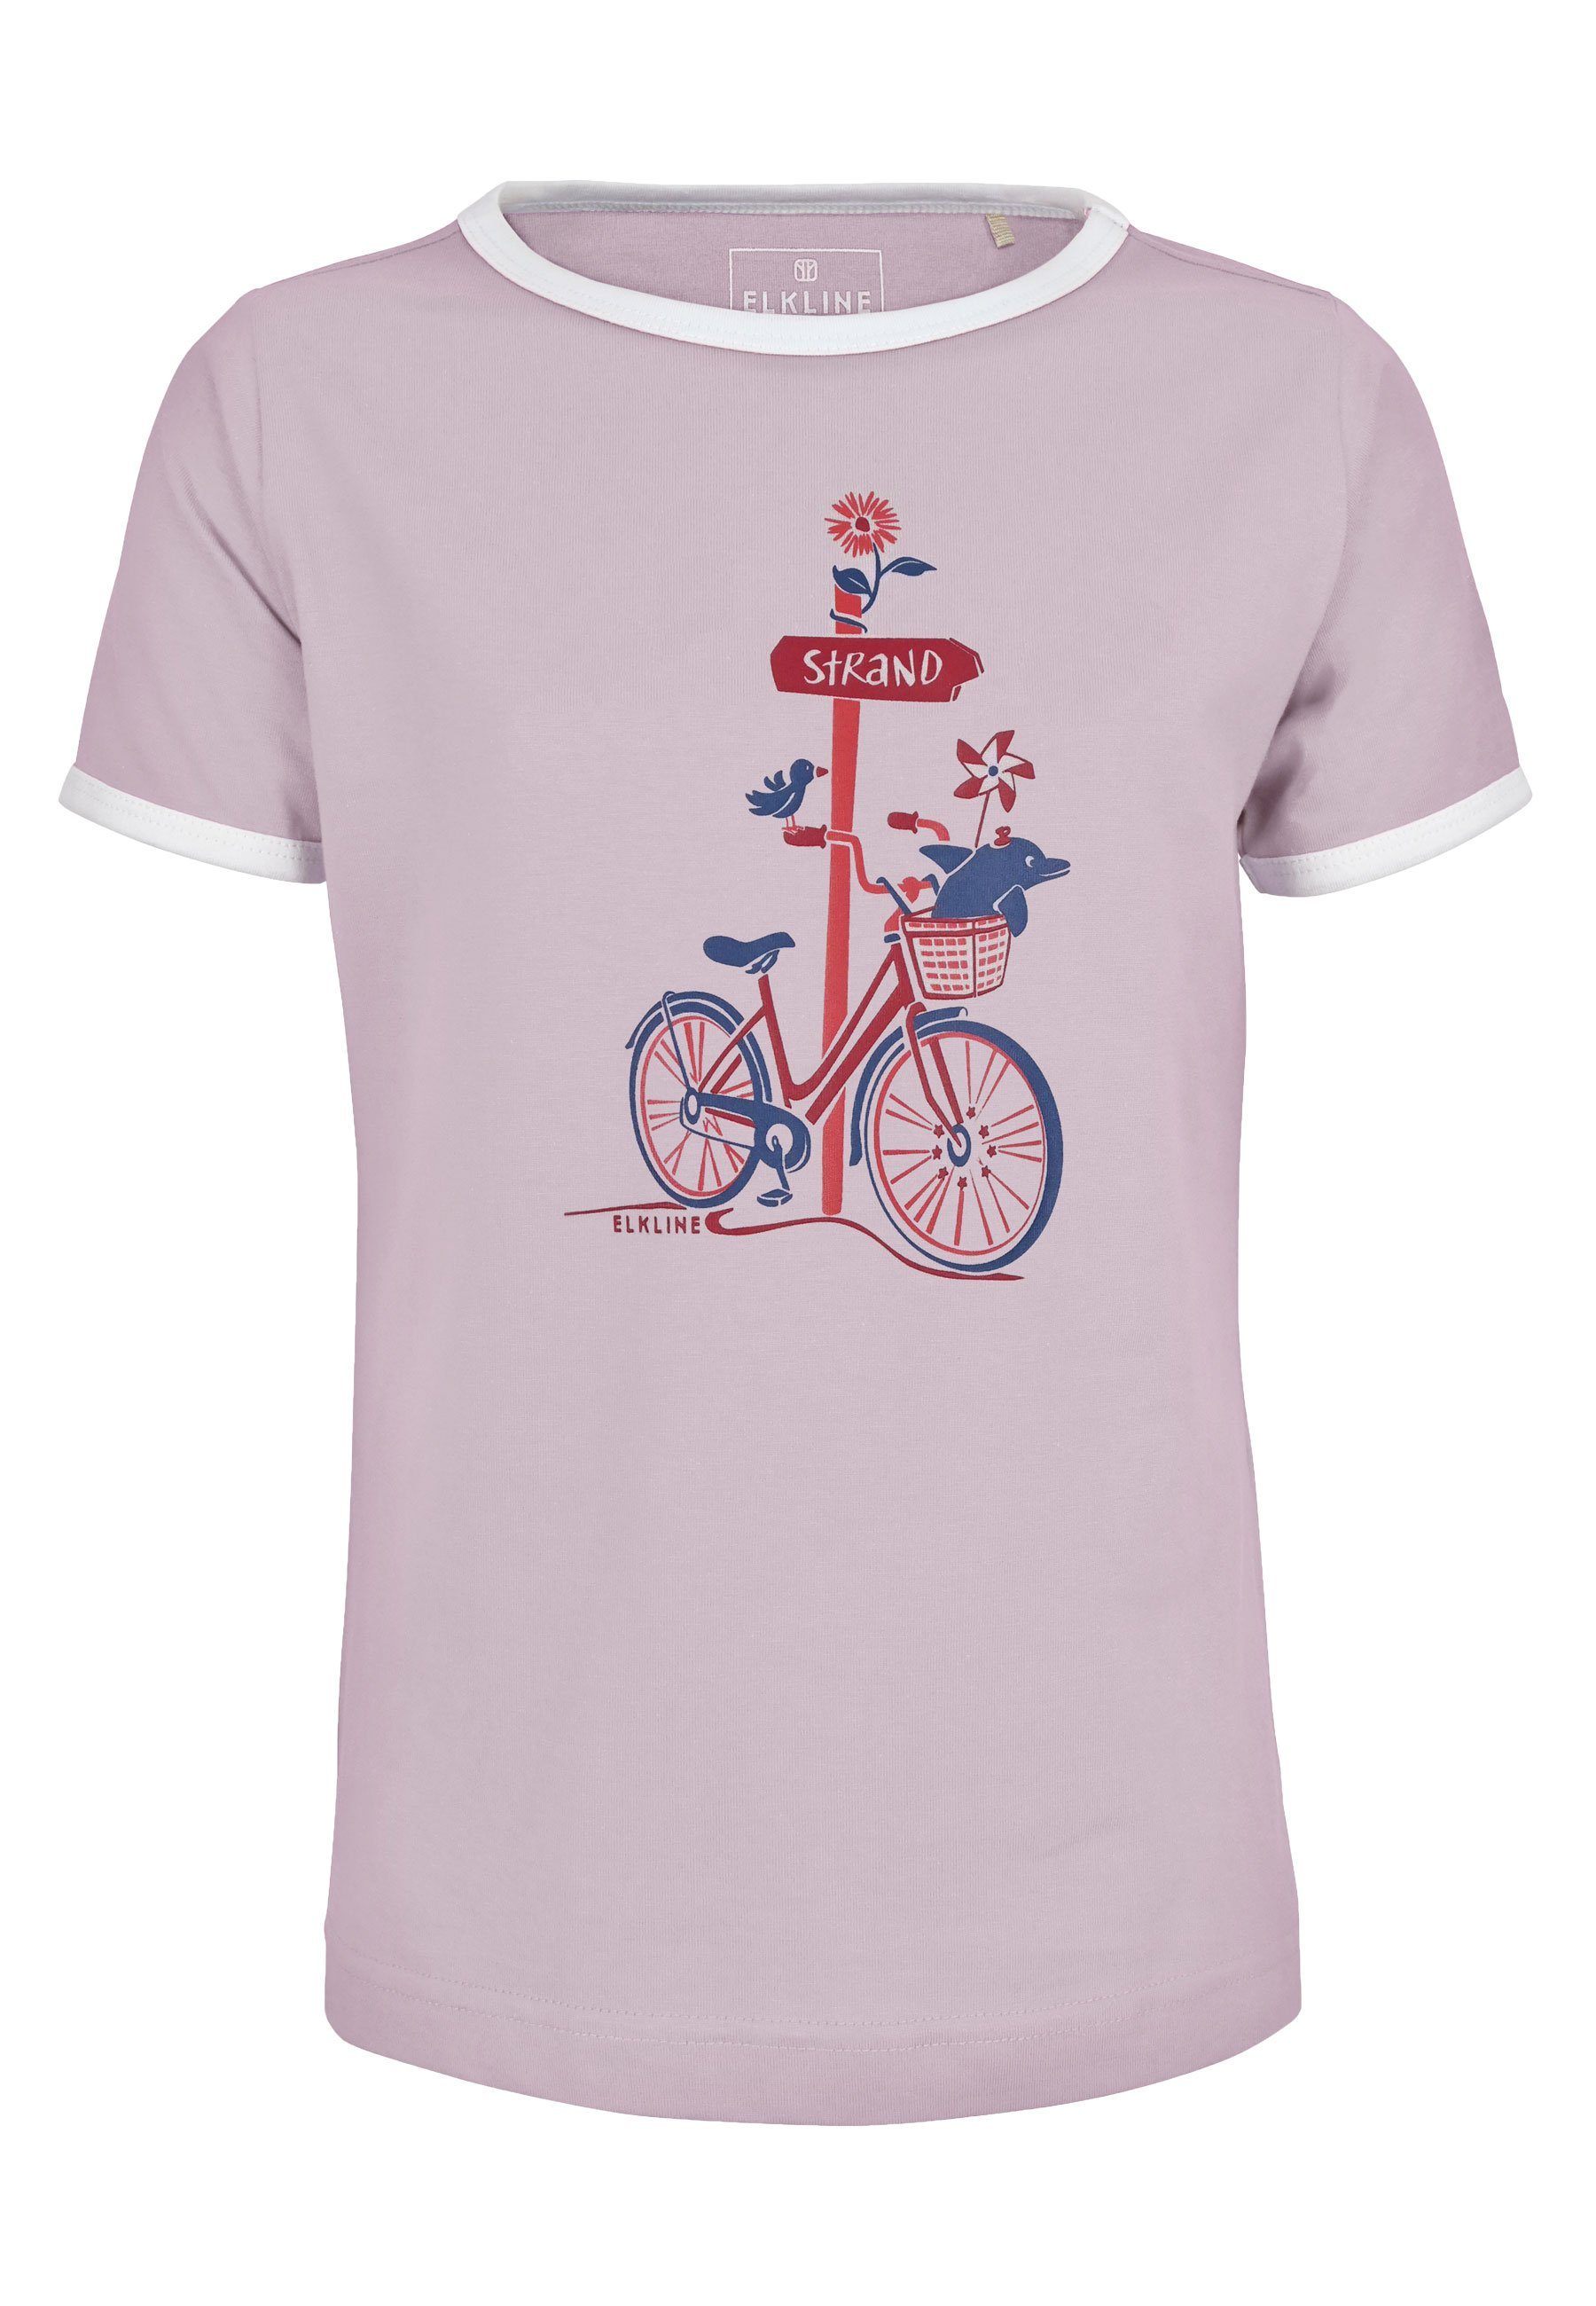 Elkline T-Shirt lavender Zum Brust Fahrrad tailliert Strand leicht Print